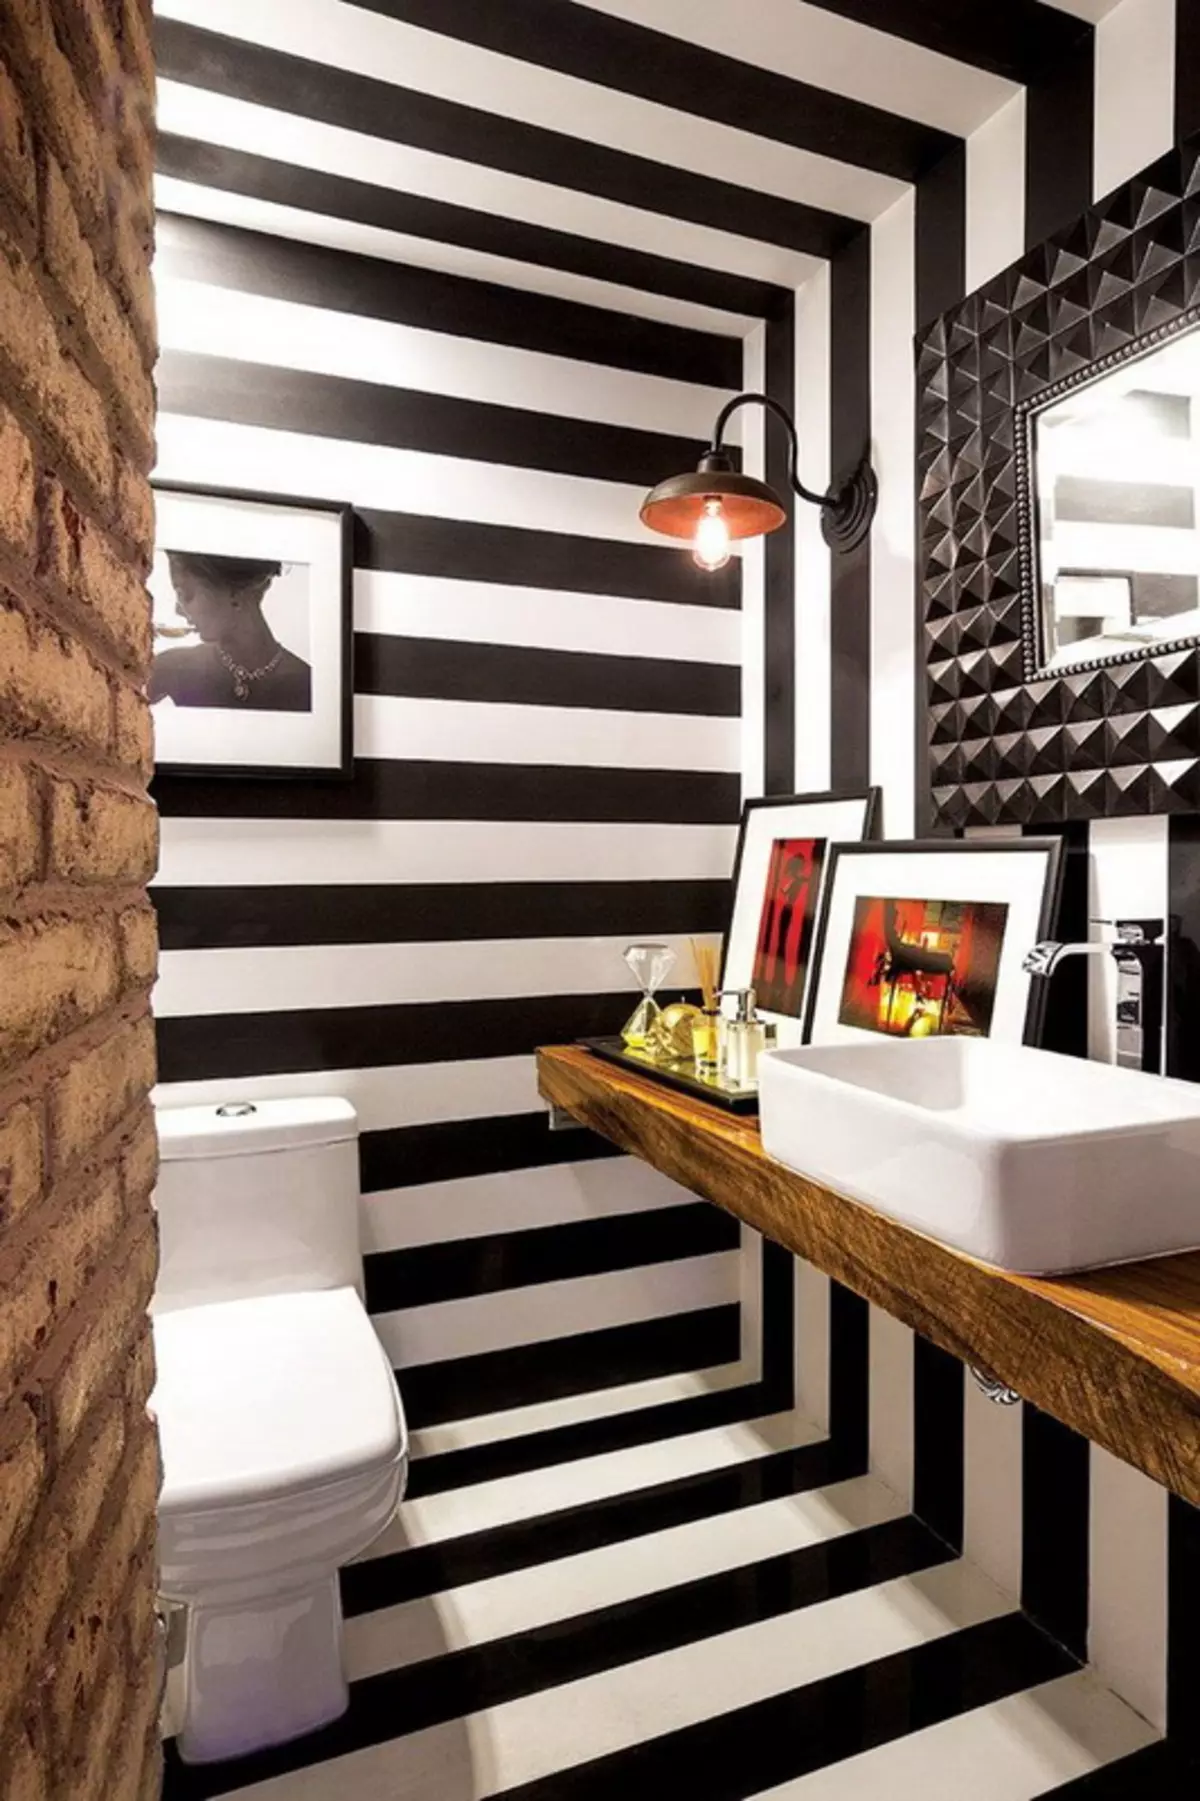 שירותים שחורים (67 תמונות): עיצוב שירותים בצבעים שחורים ולבנים, מבחר של שירותים צבעים כהים בדירה, גימור עם אריחים שחורים ואדומים 10501_32